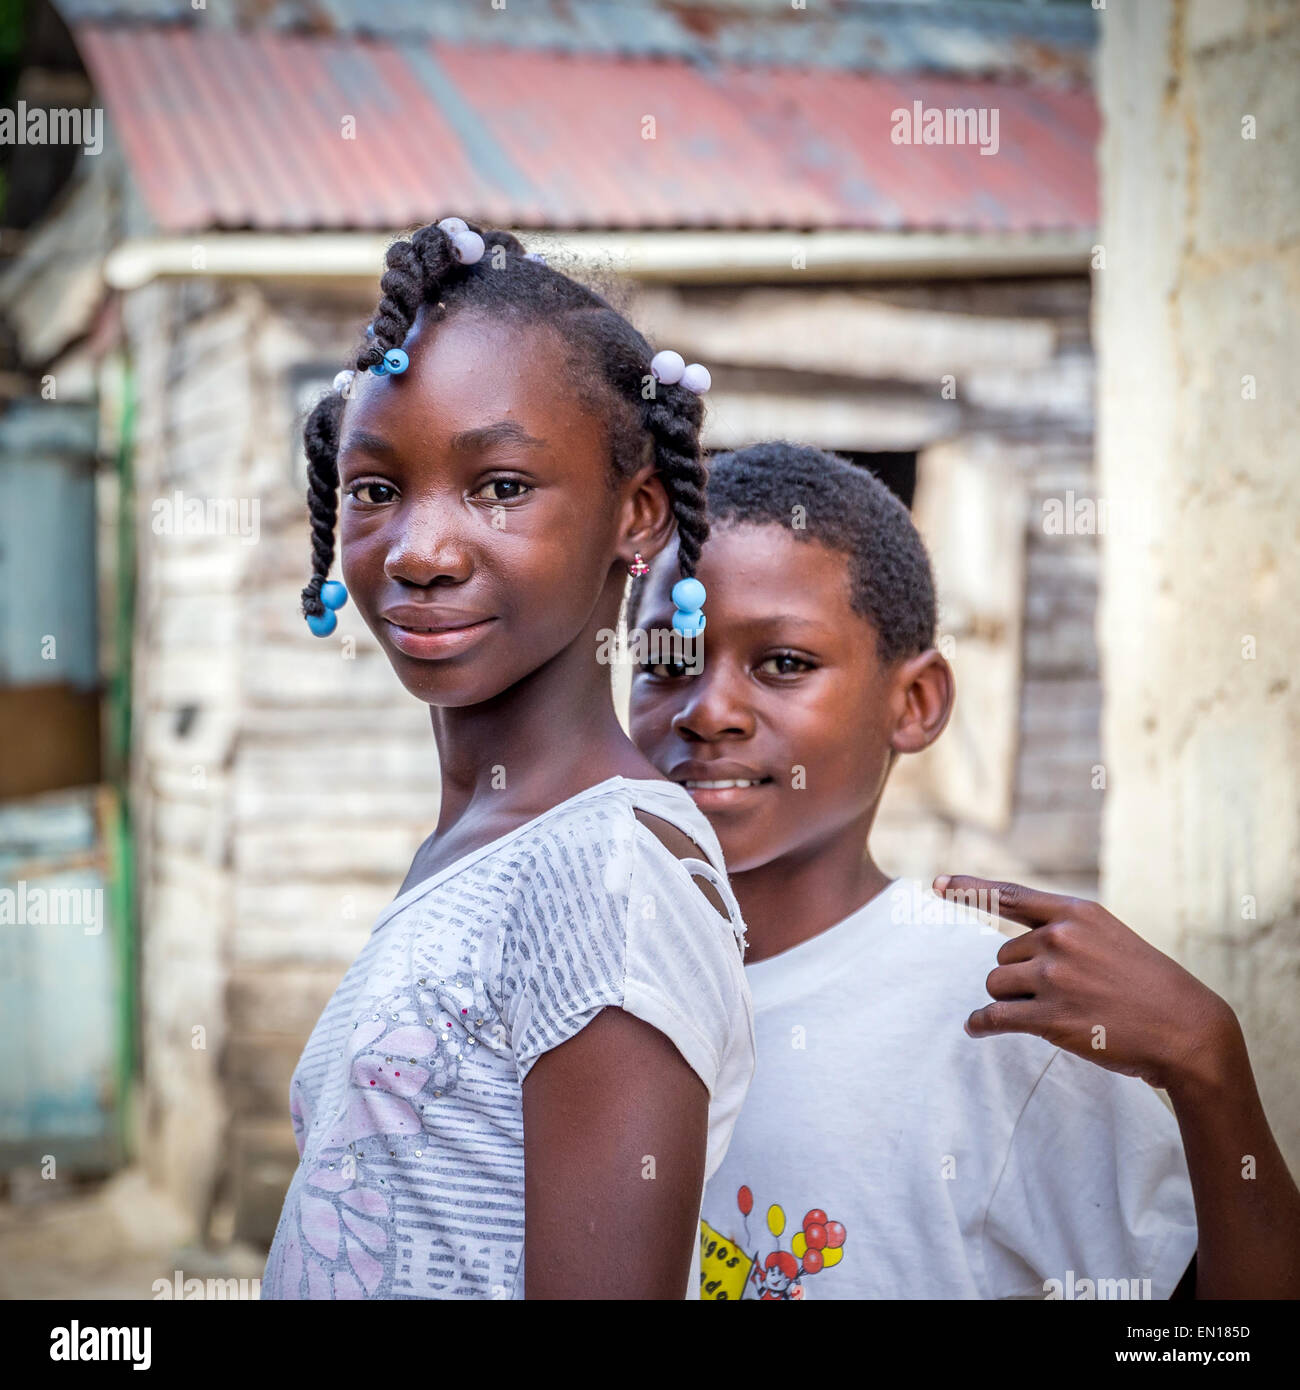 HIGUEY, Dominikanische Republik - 19. November 2014: Porträt des Lächelns haitianische Kinder im Flüchtlingslager in Dominikanische Republik Stockfoto